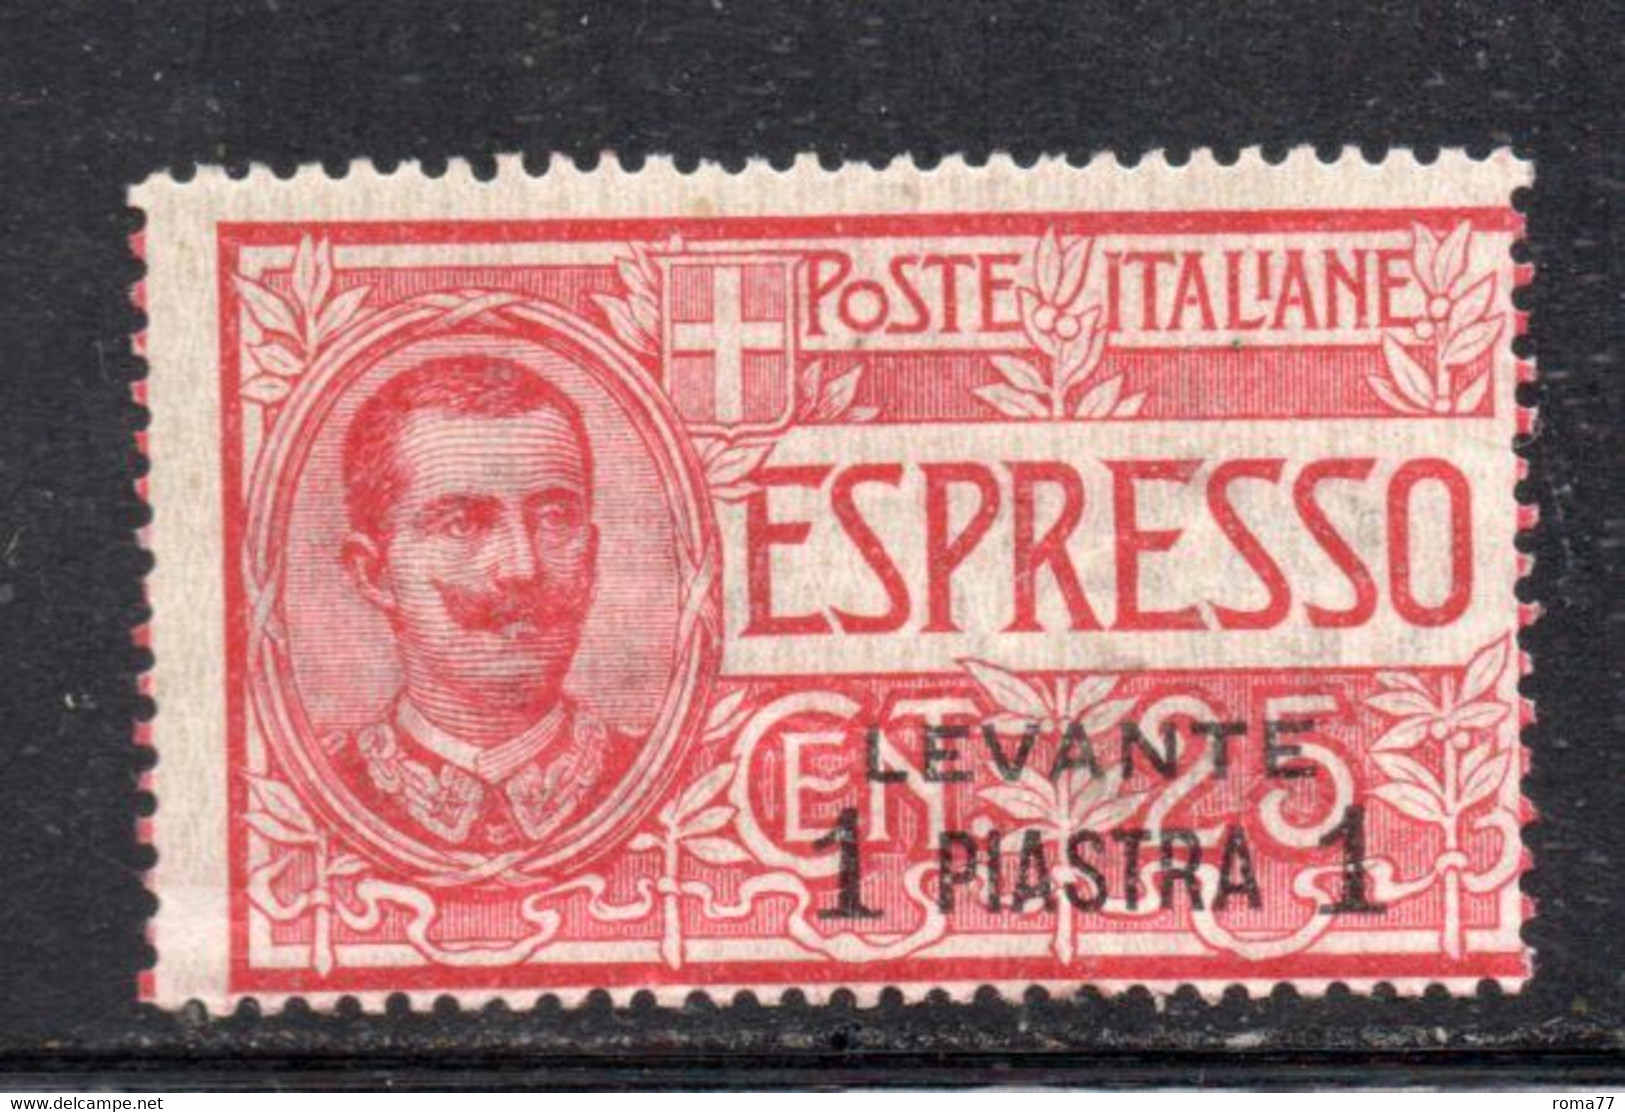 Y2389 - UFFICI LEVANTE 1908 : ESPRESSI Sassone N. 1 Con Gomma Integra *** MNH. - Albanien